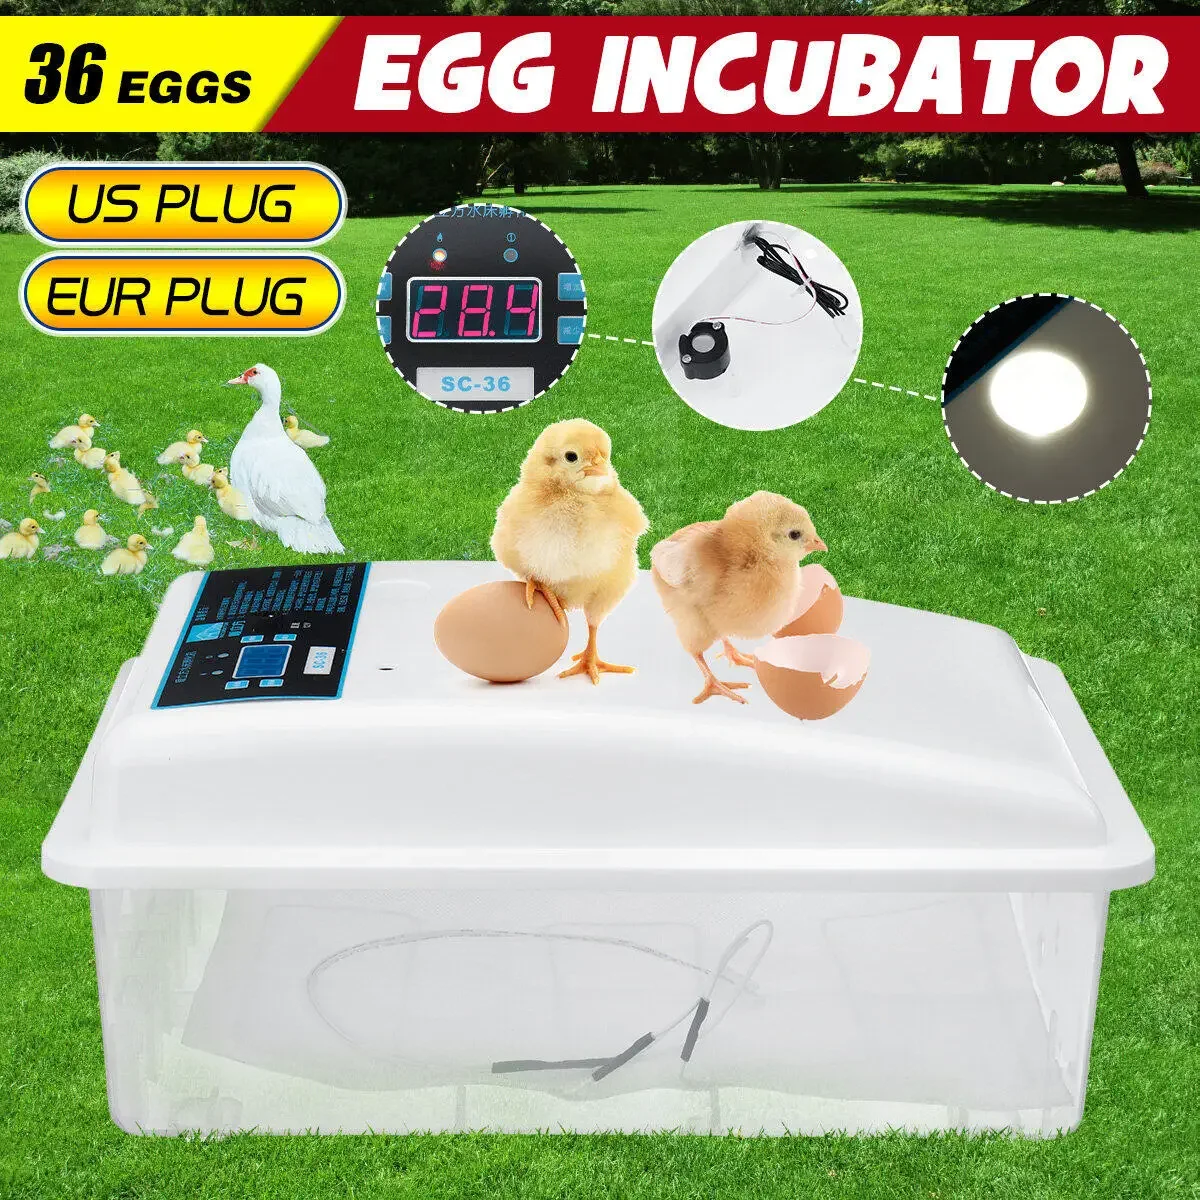 

36 Eggs Incubator Automatic Mini Egg Incubators with Hatcher Digital for Chicken Eggs Waterbed Replenishment Temperature Control